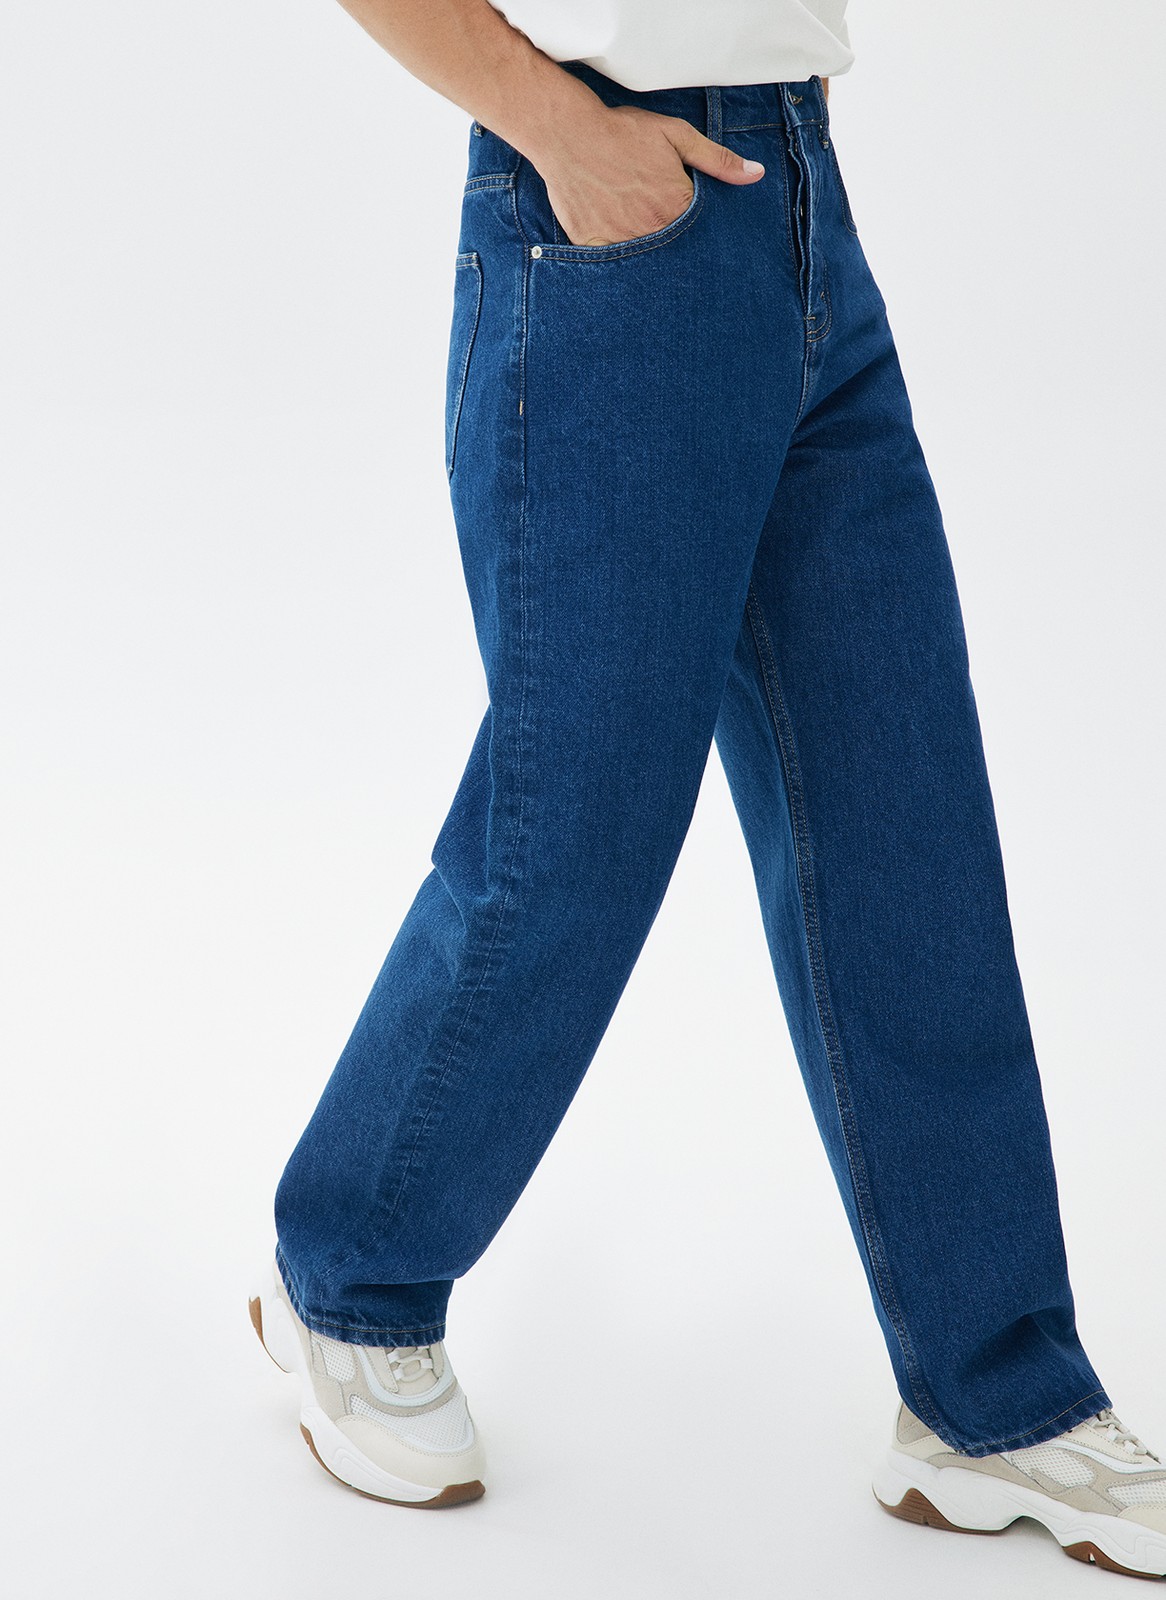 Брюки из джинсовой ткани для мужчины синий цвет купить в All We Need